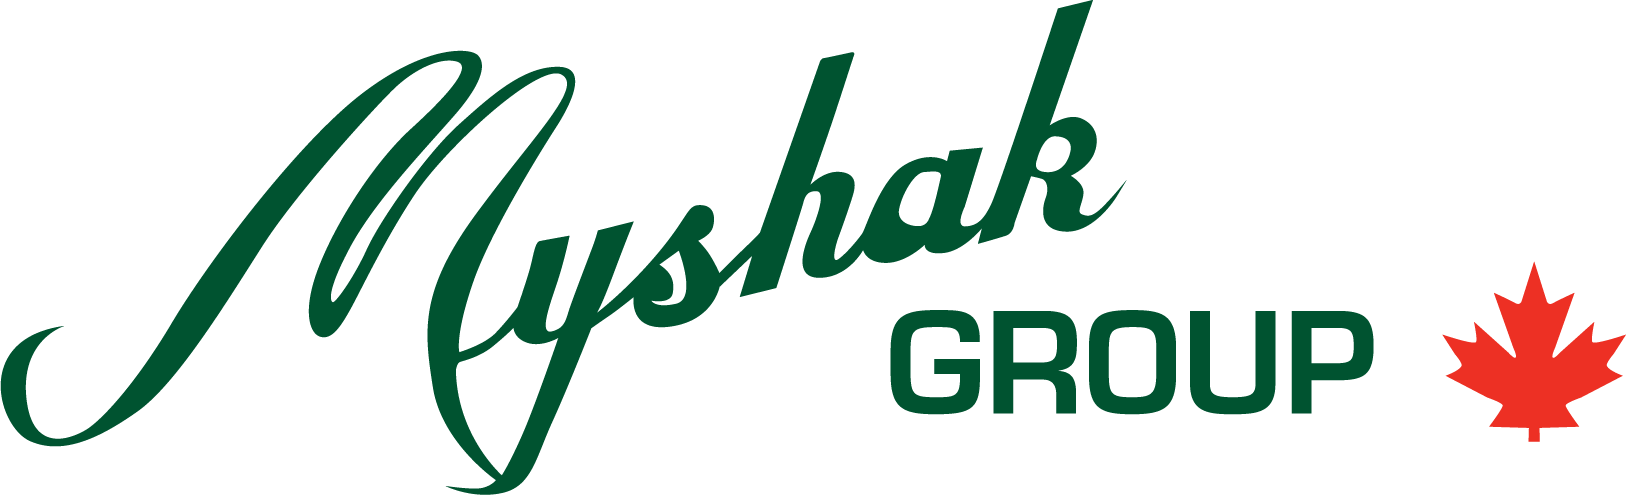 Myshak Group logo